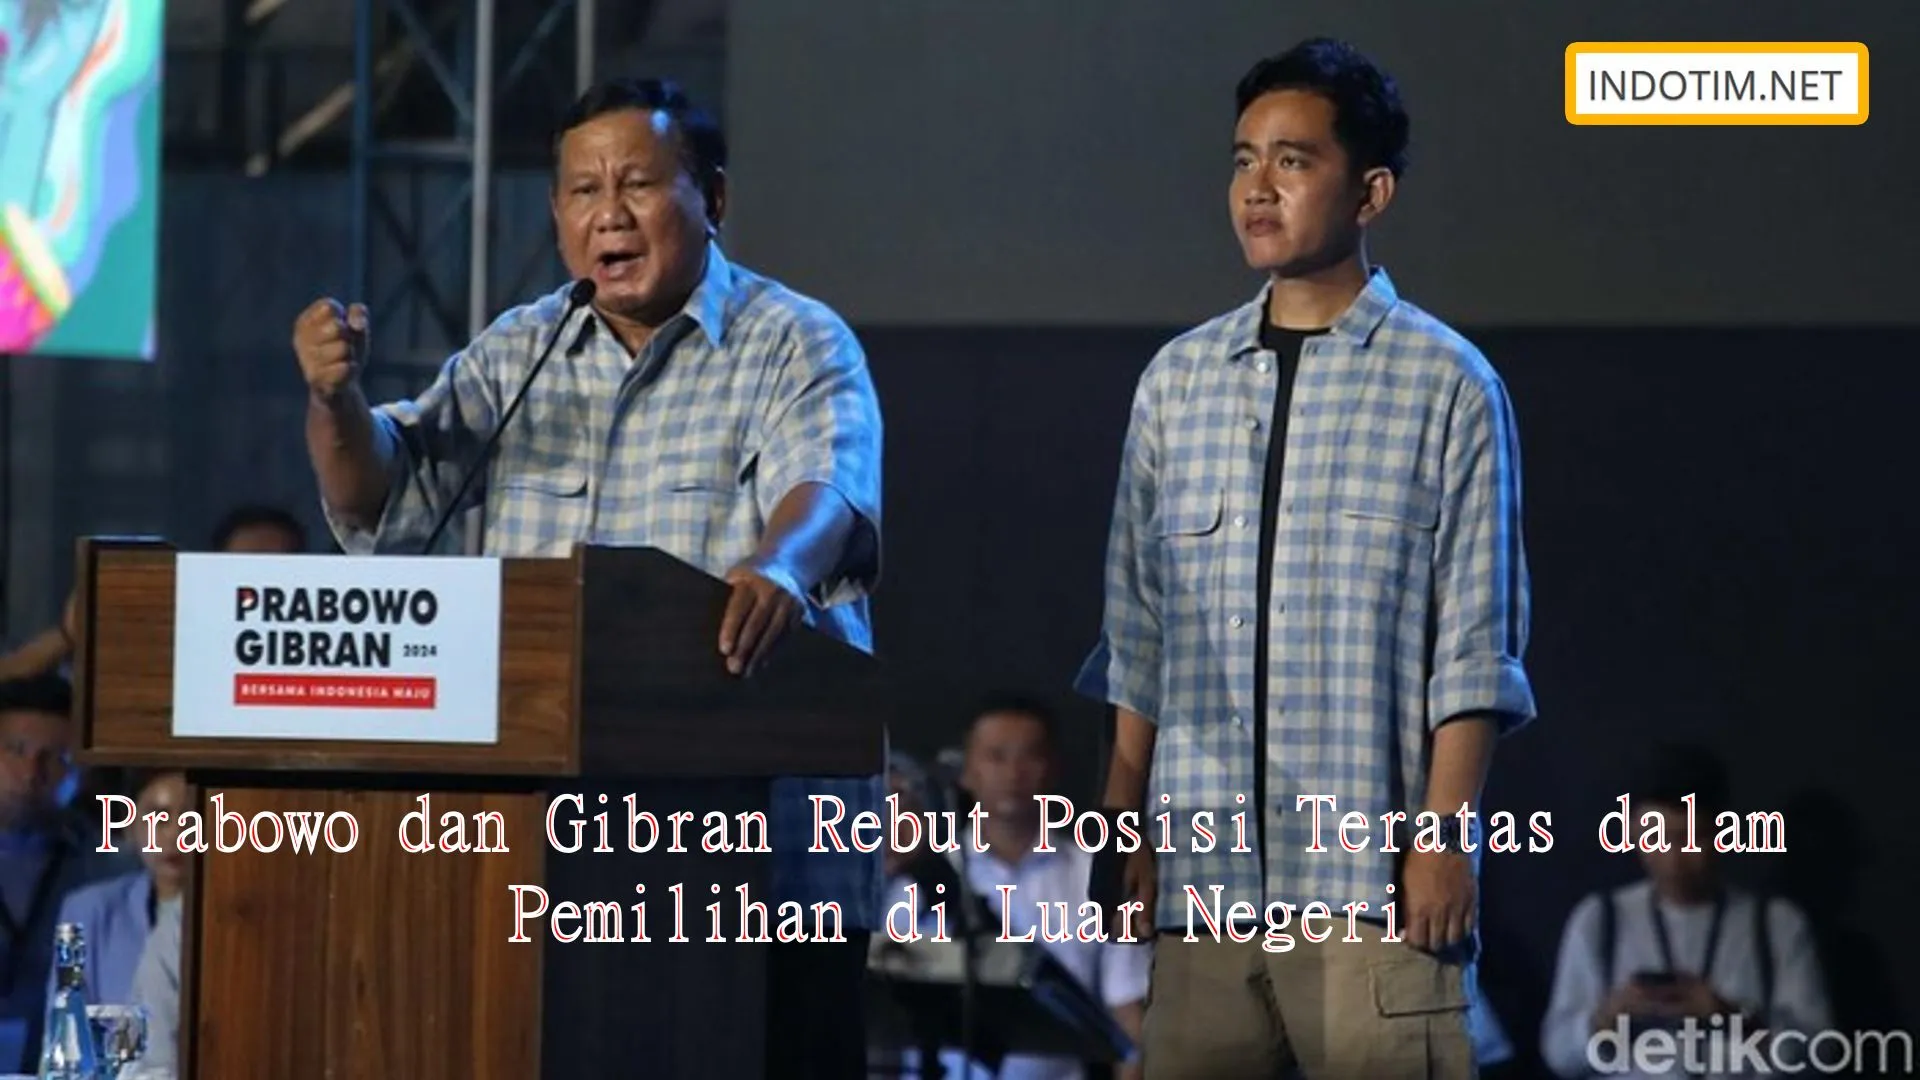 Prabowo dan Gibran Rebut Posisi Teratas dalam Pemilihan di Luar Negeri